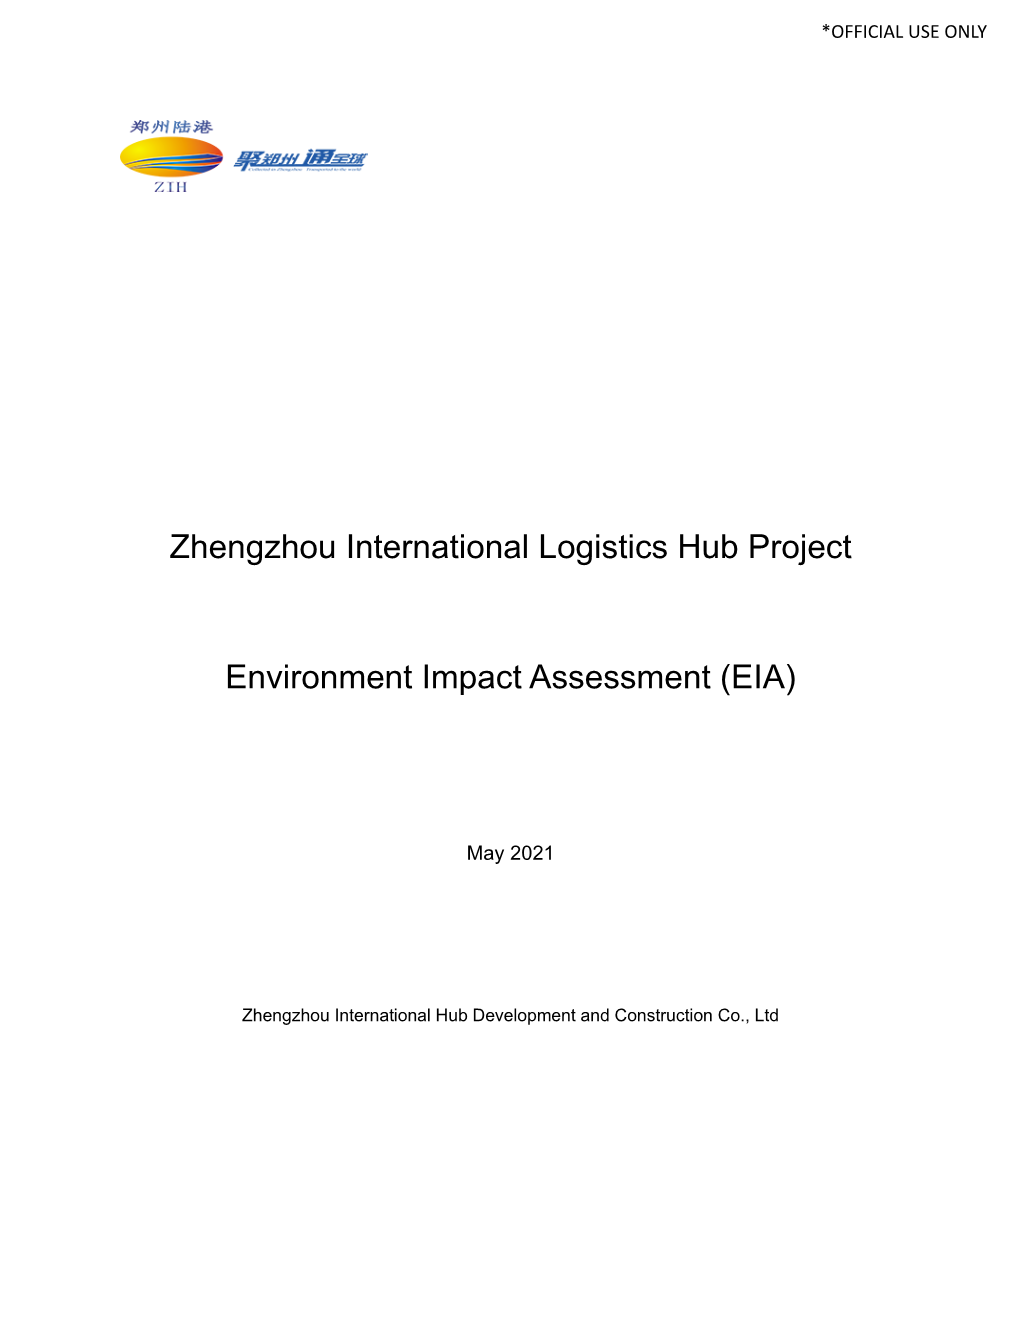 Zhengzhou International Logistics Hub Project Environment Impact